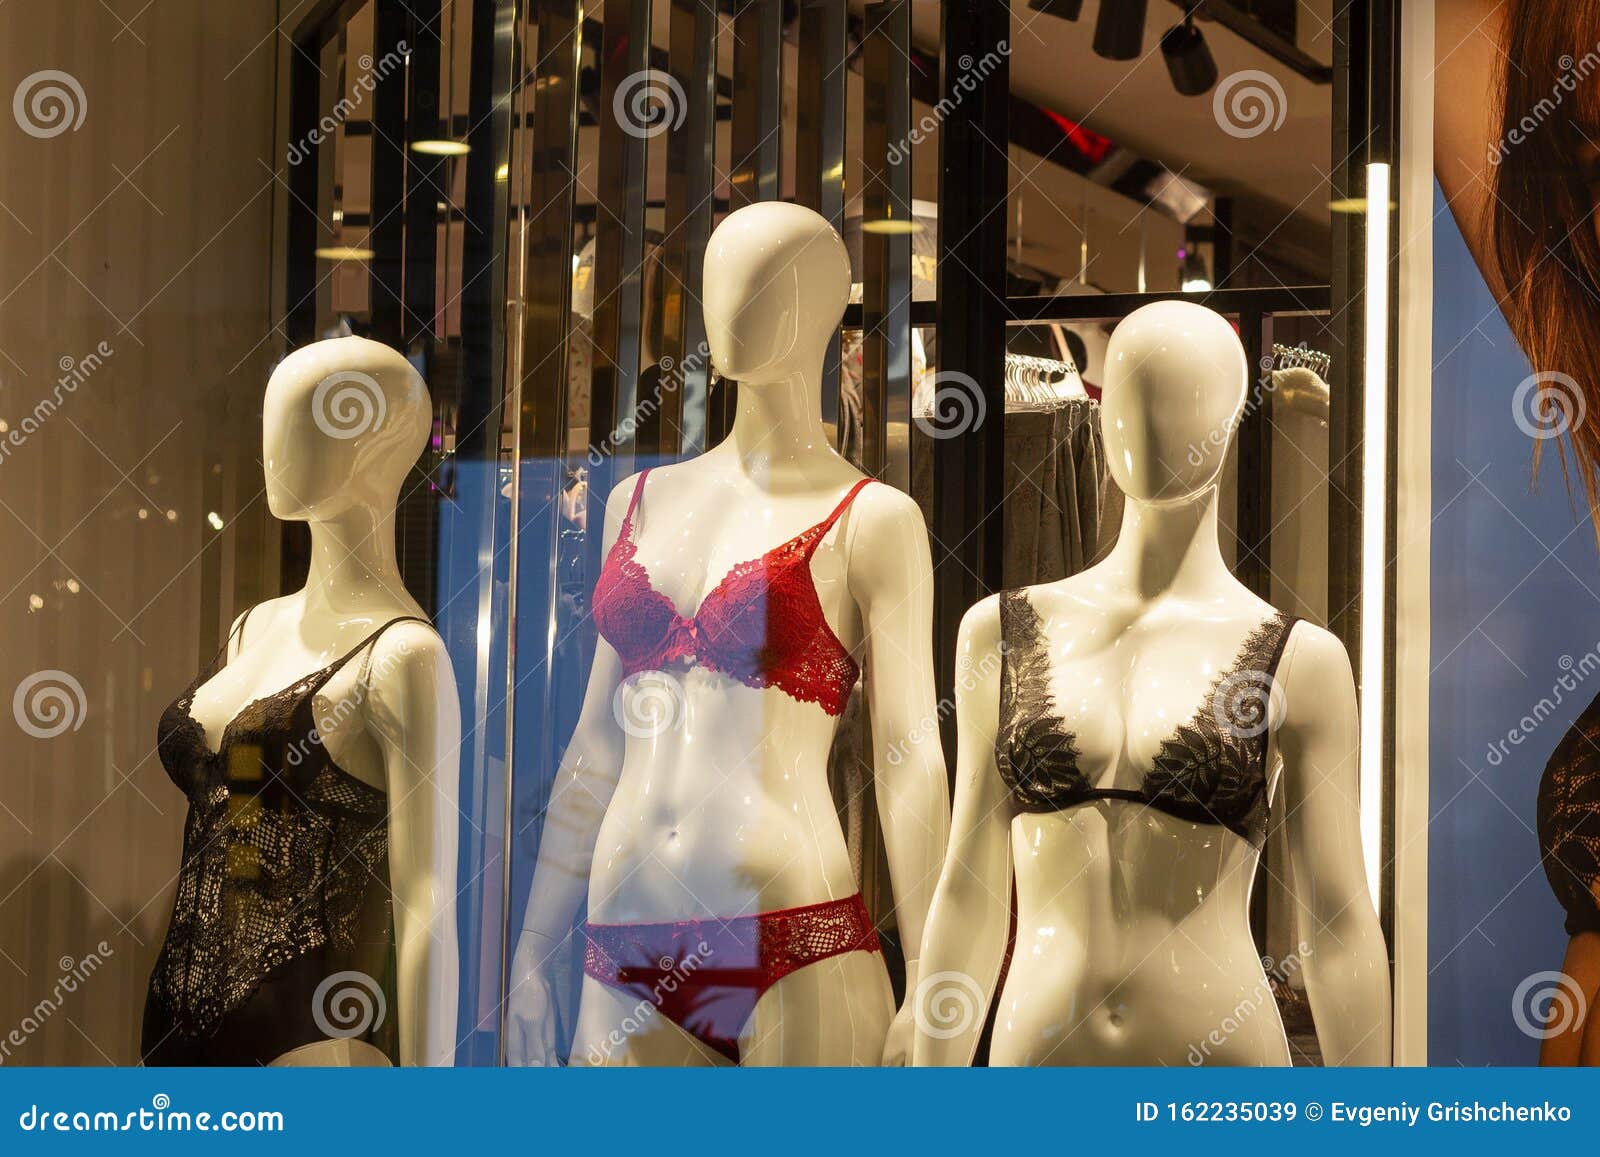 magasin de lingerie féminine